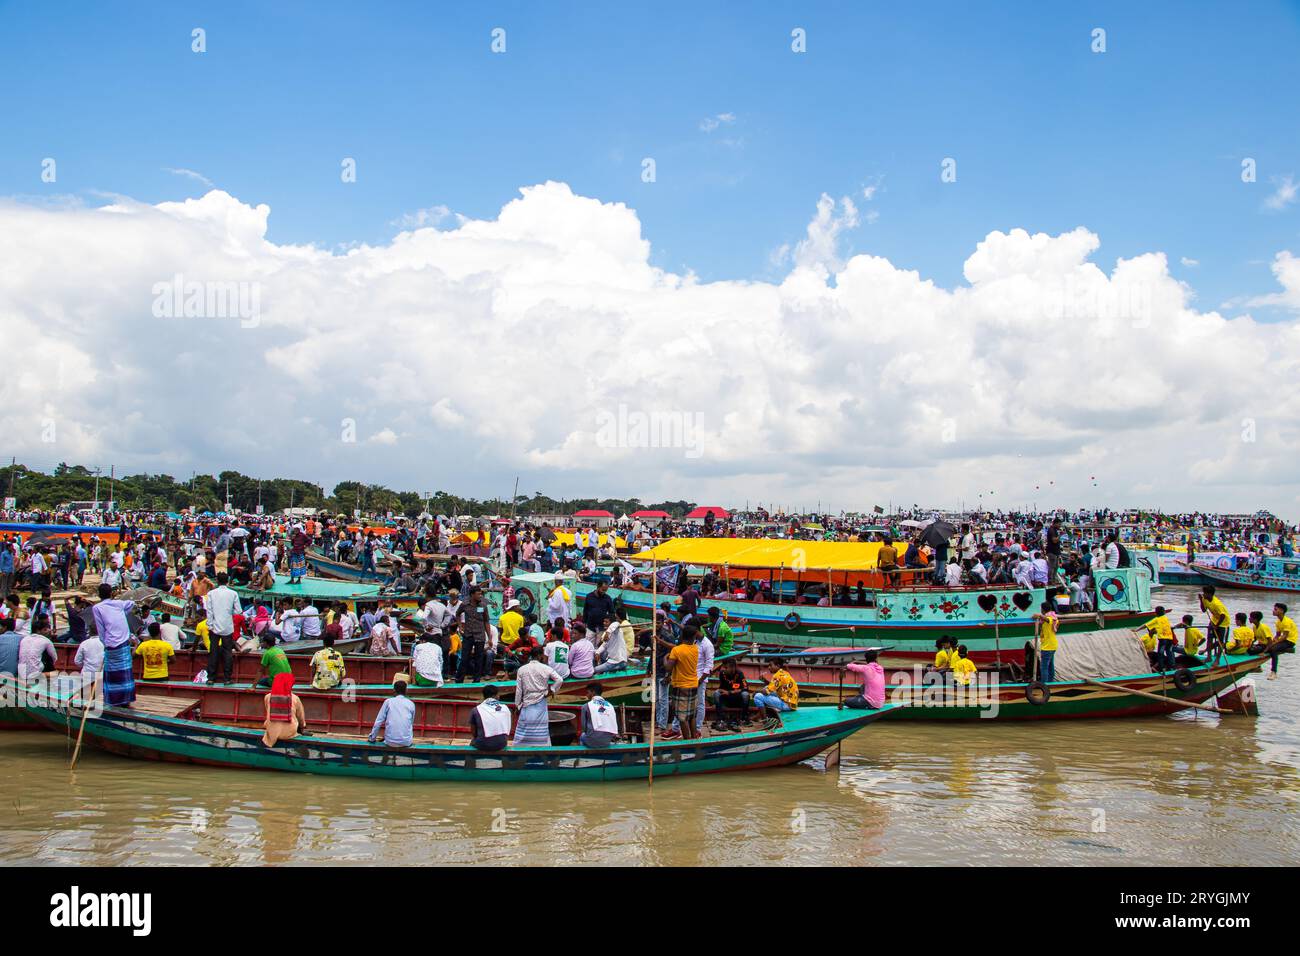 Station de bateau traditionnelle, mode de vie des gens et photographie de ciel nuageux capturée le 25 juin 2022, de Jajira, Bangladesh Banque D'Images